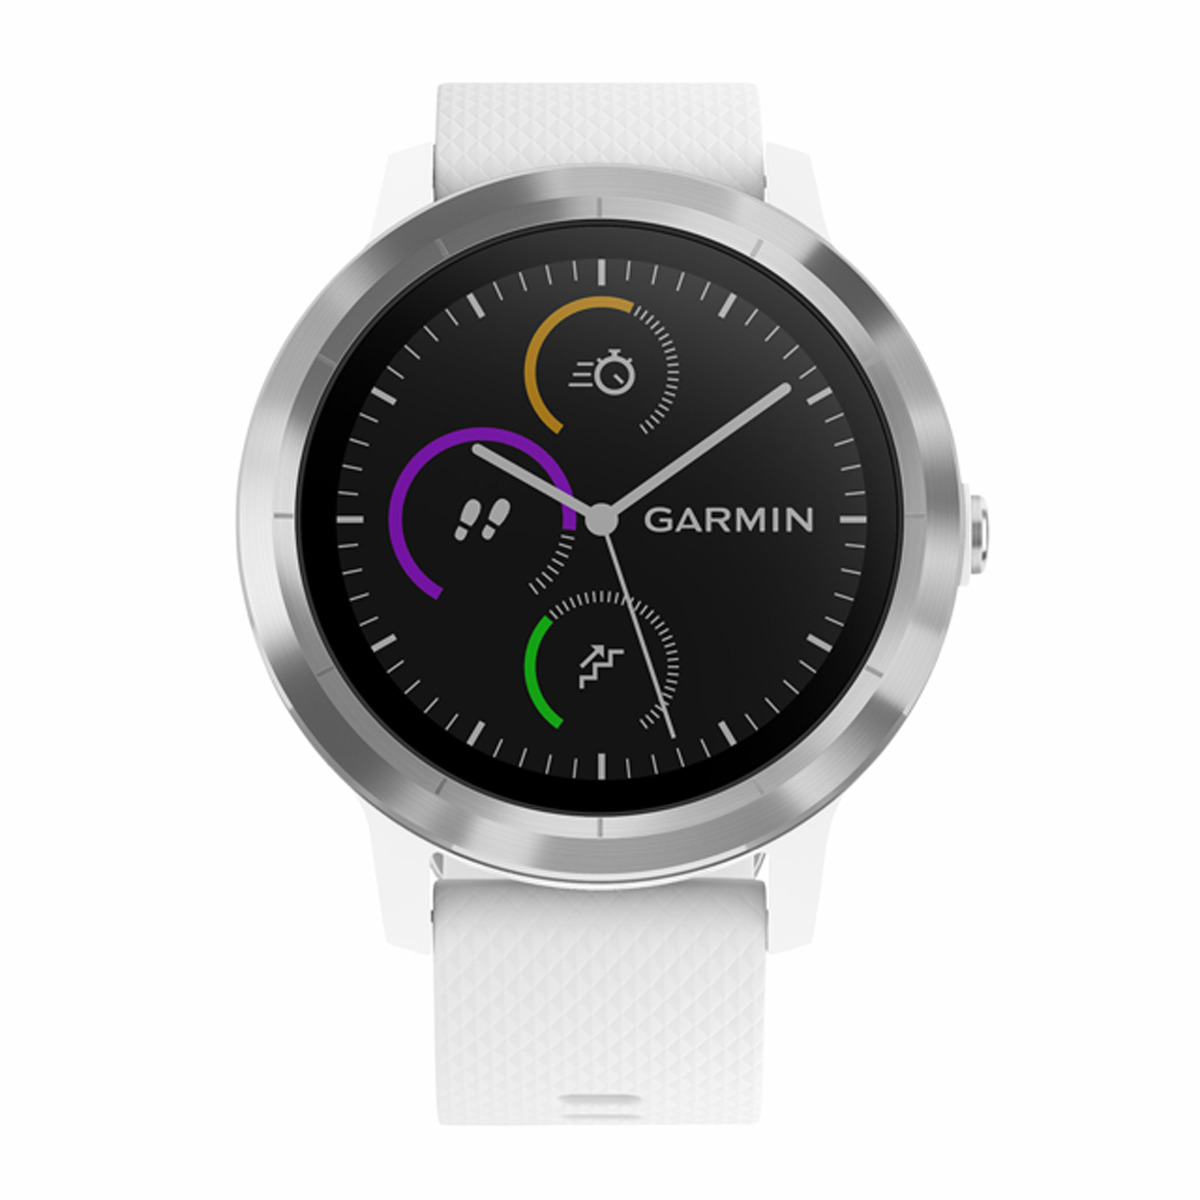 Reloj deportivo GARMIN Vivoactive 3 (Bluetooth - 7 días de autonomía - Pantalla táctil - Blanco)